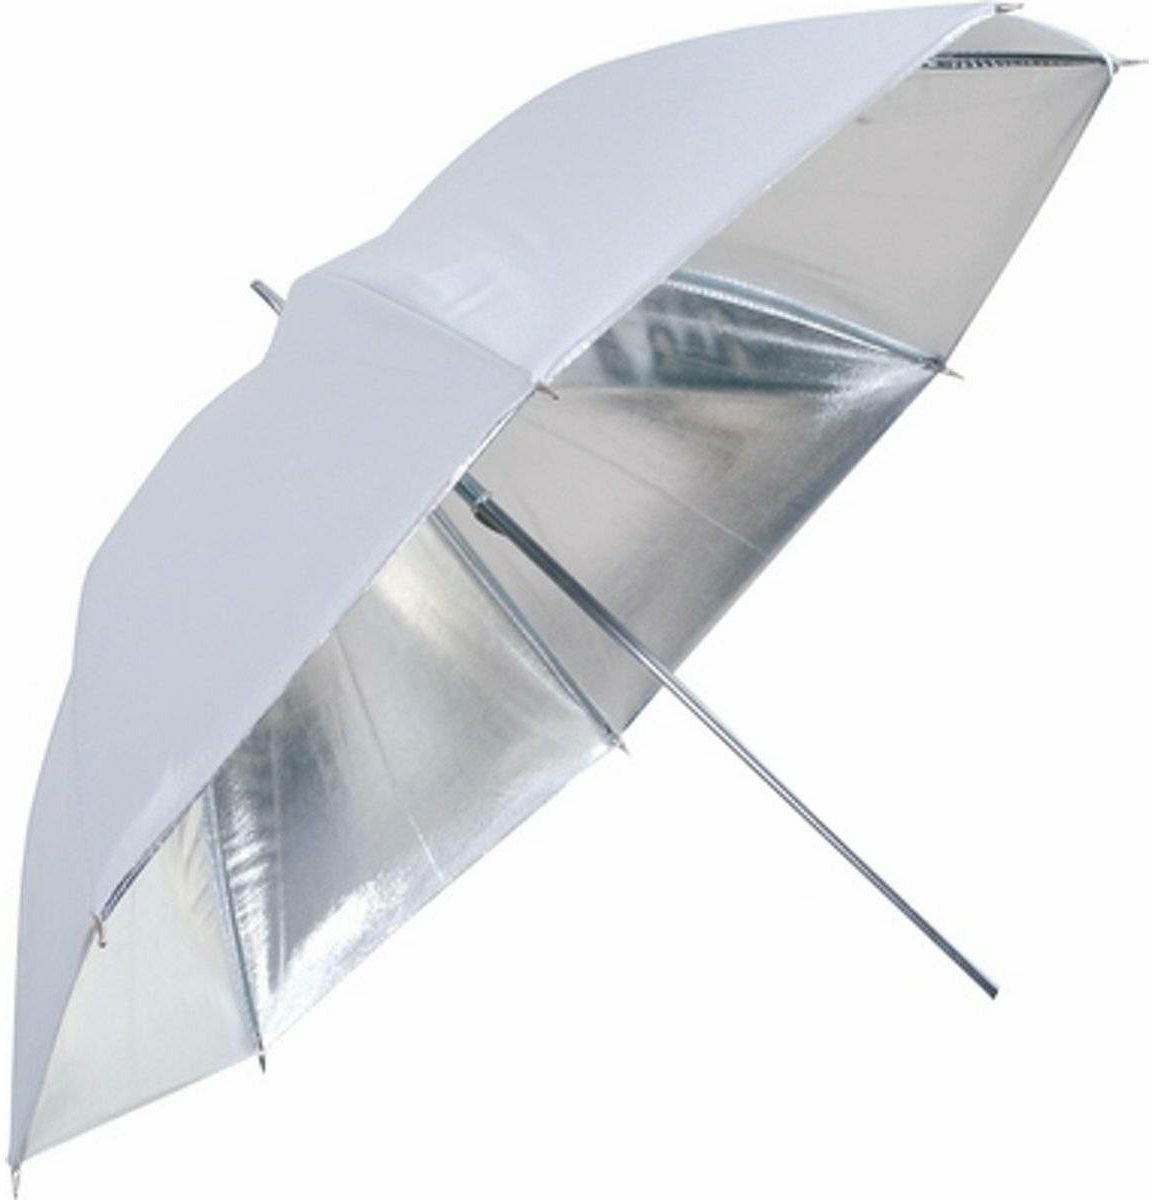 Linkstar Umbrella PUK-102SW Silver White 120cm (reversible) studijski foto kišobran